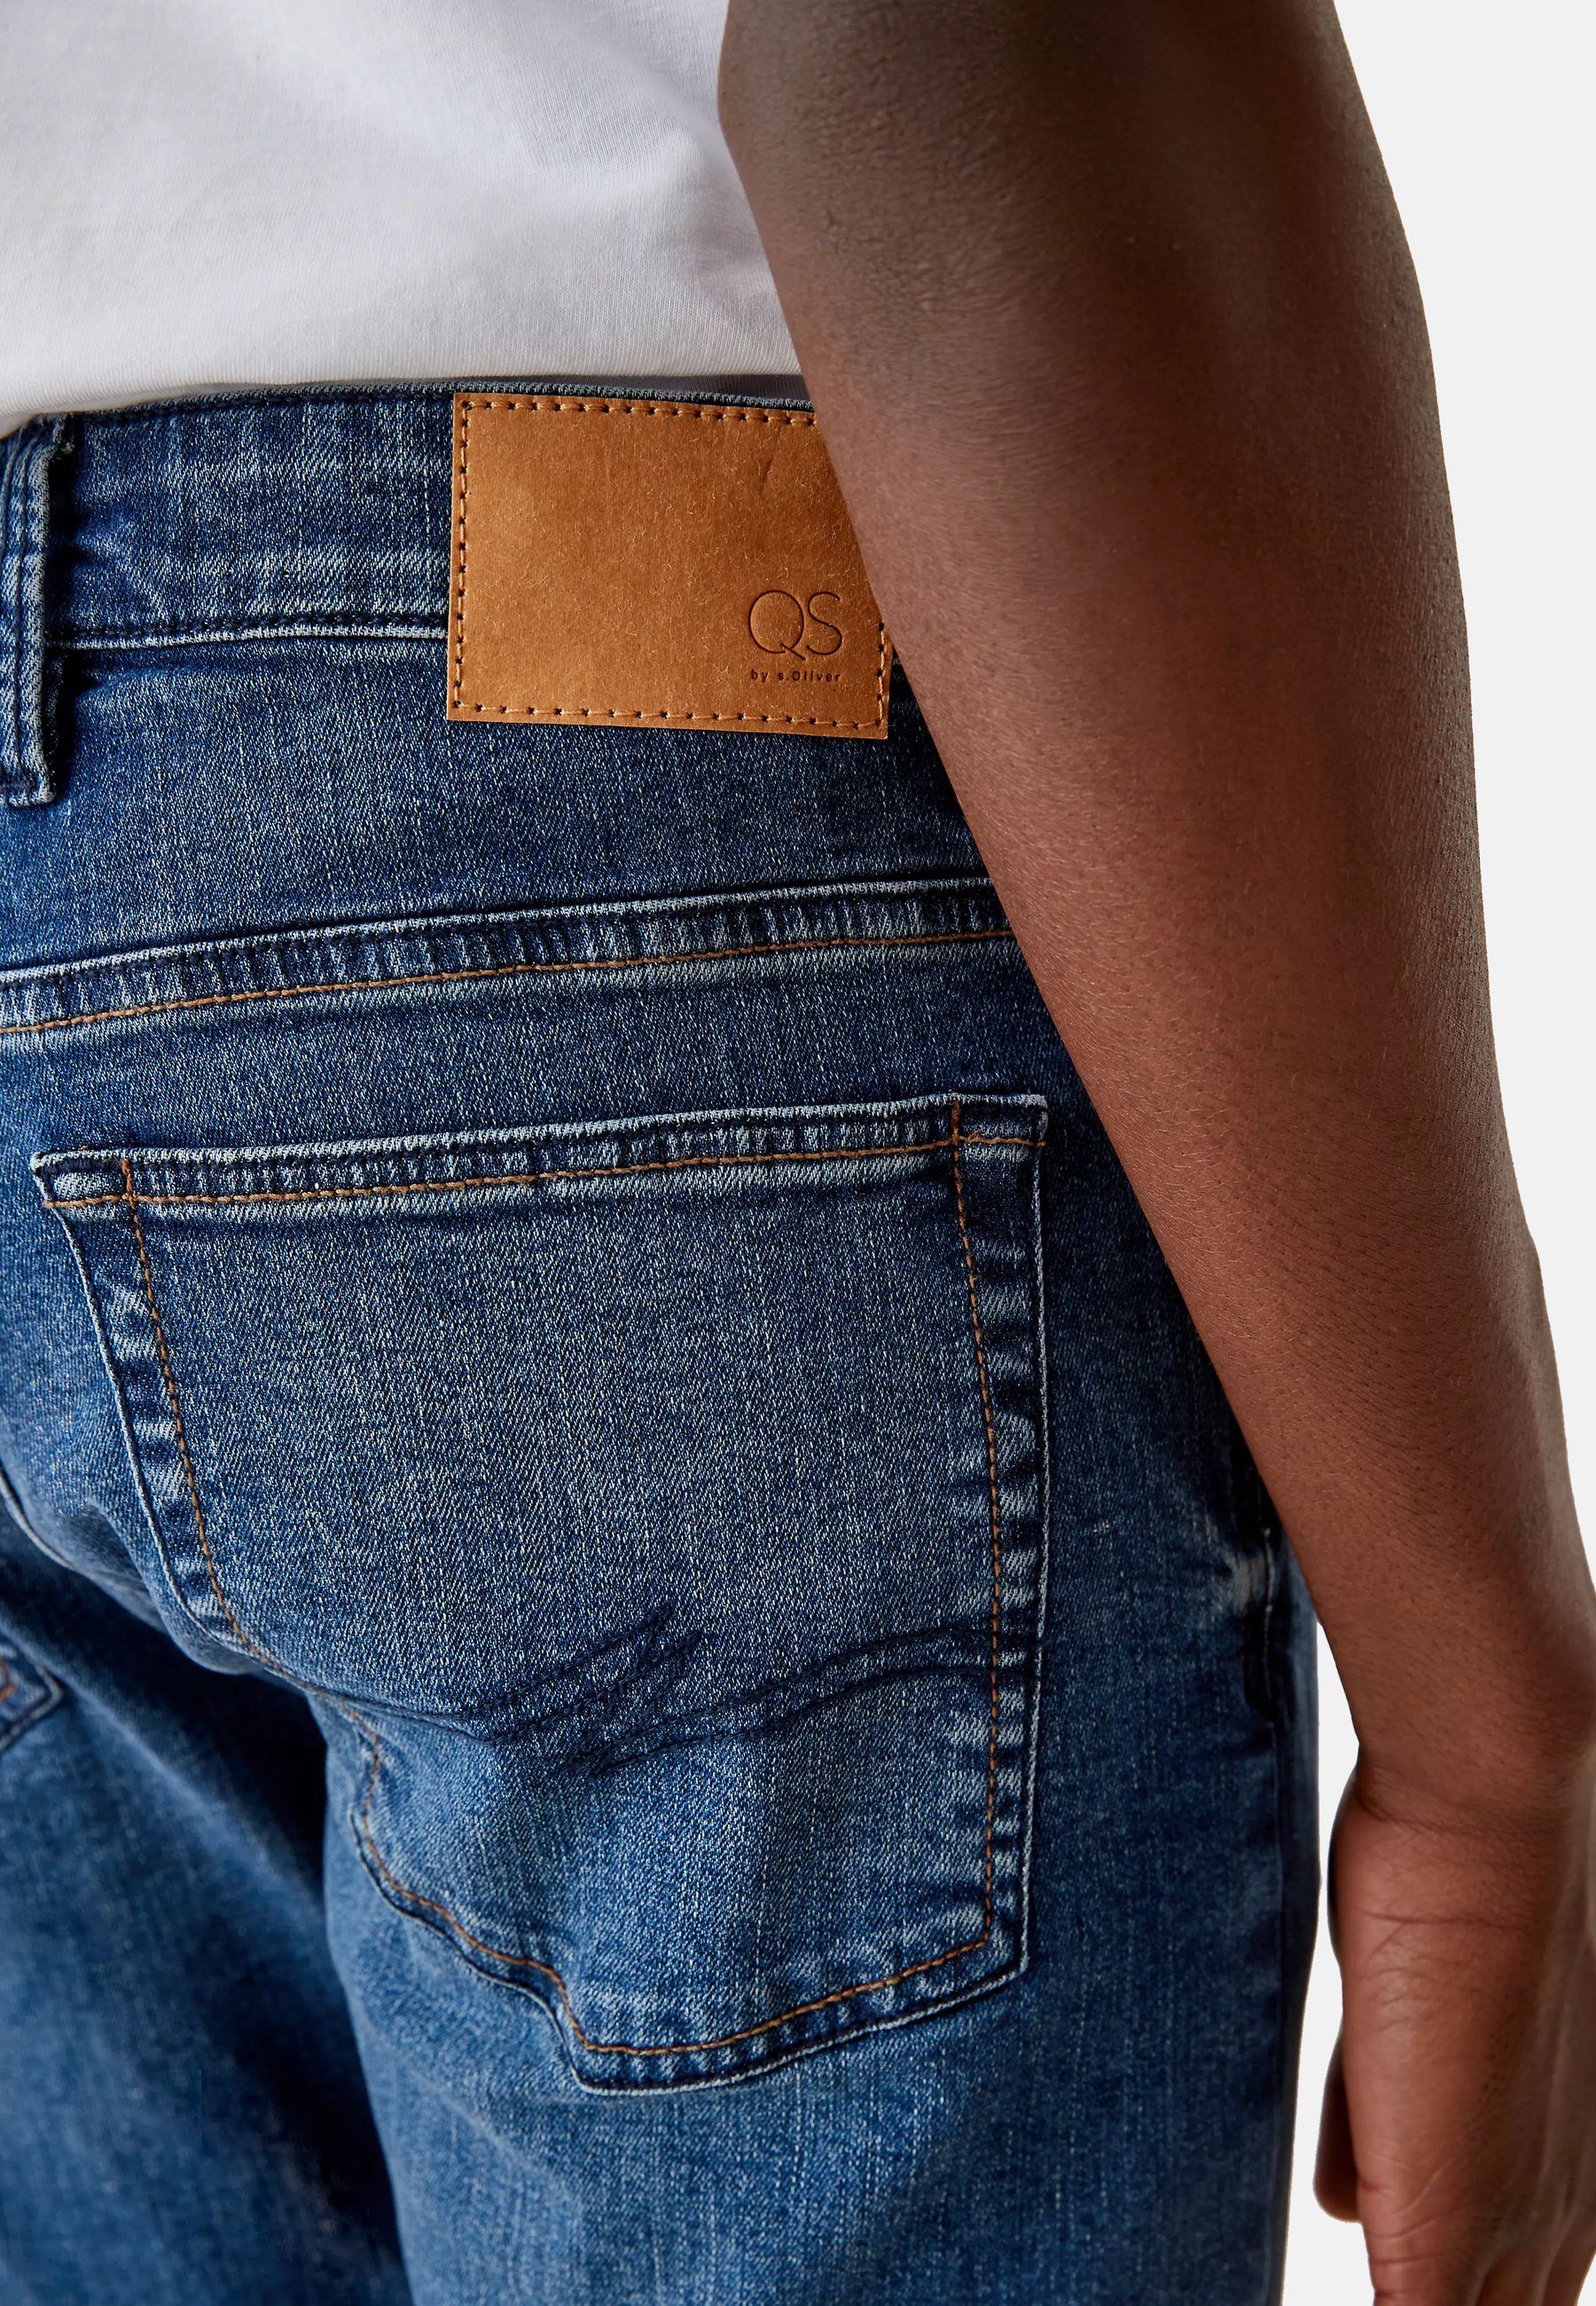 Hose Slim Five-Pocket-Style im 5-Pocket-Jeans s.Oliver Jeans